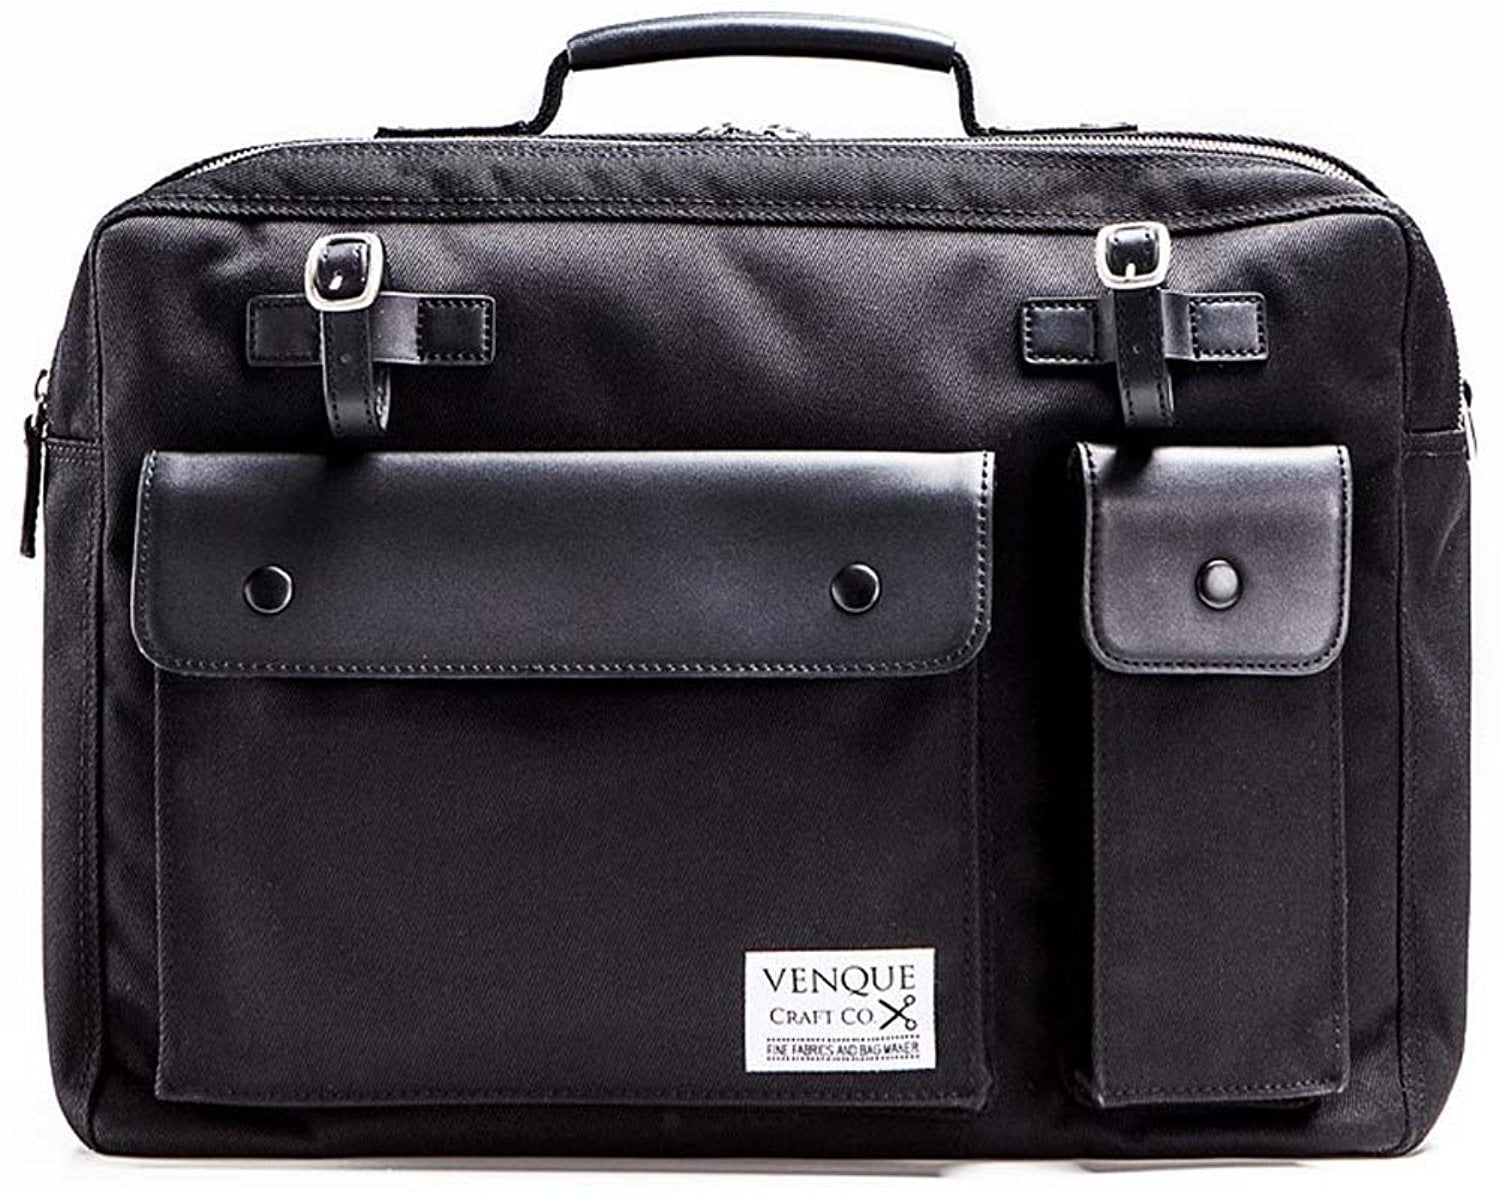 venque briefcase